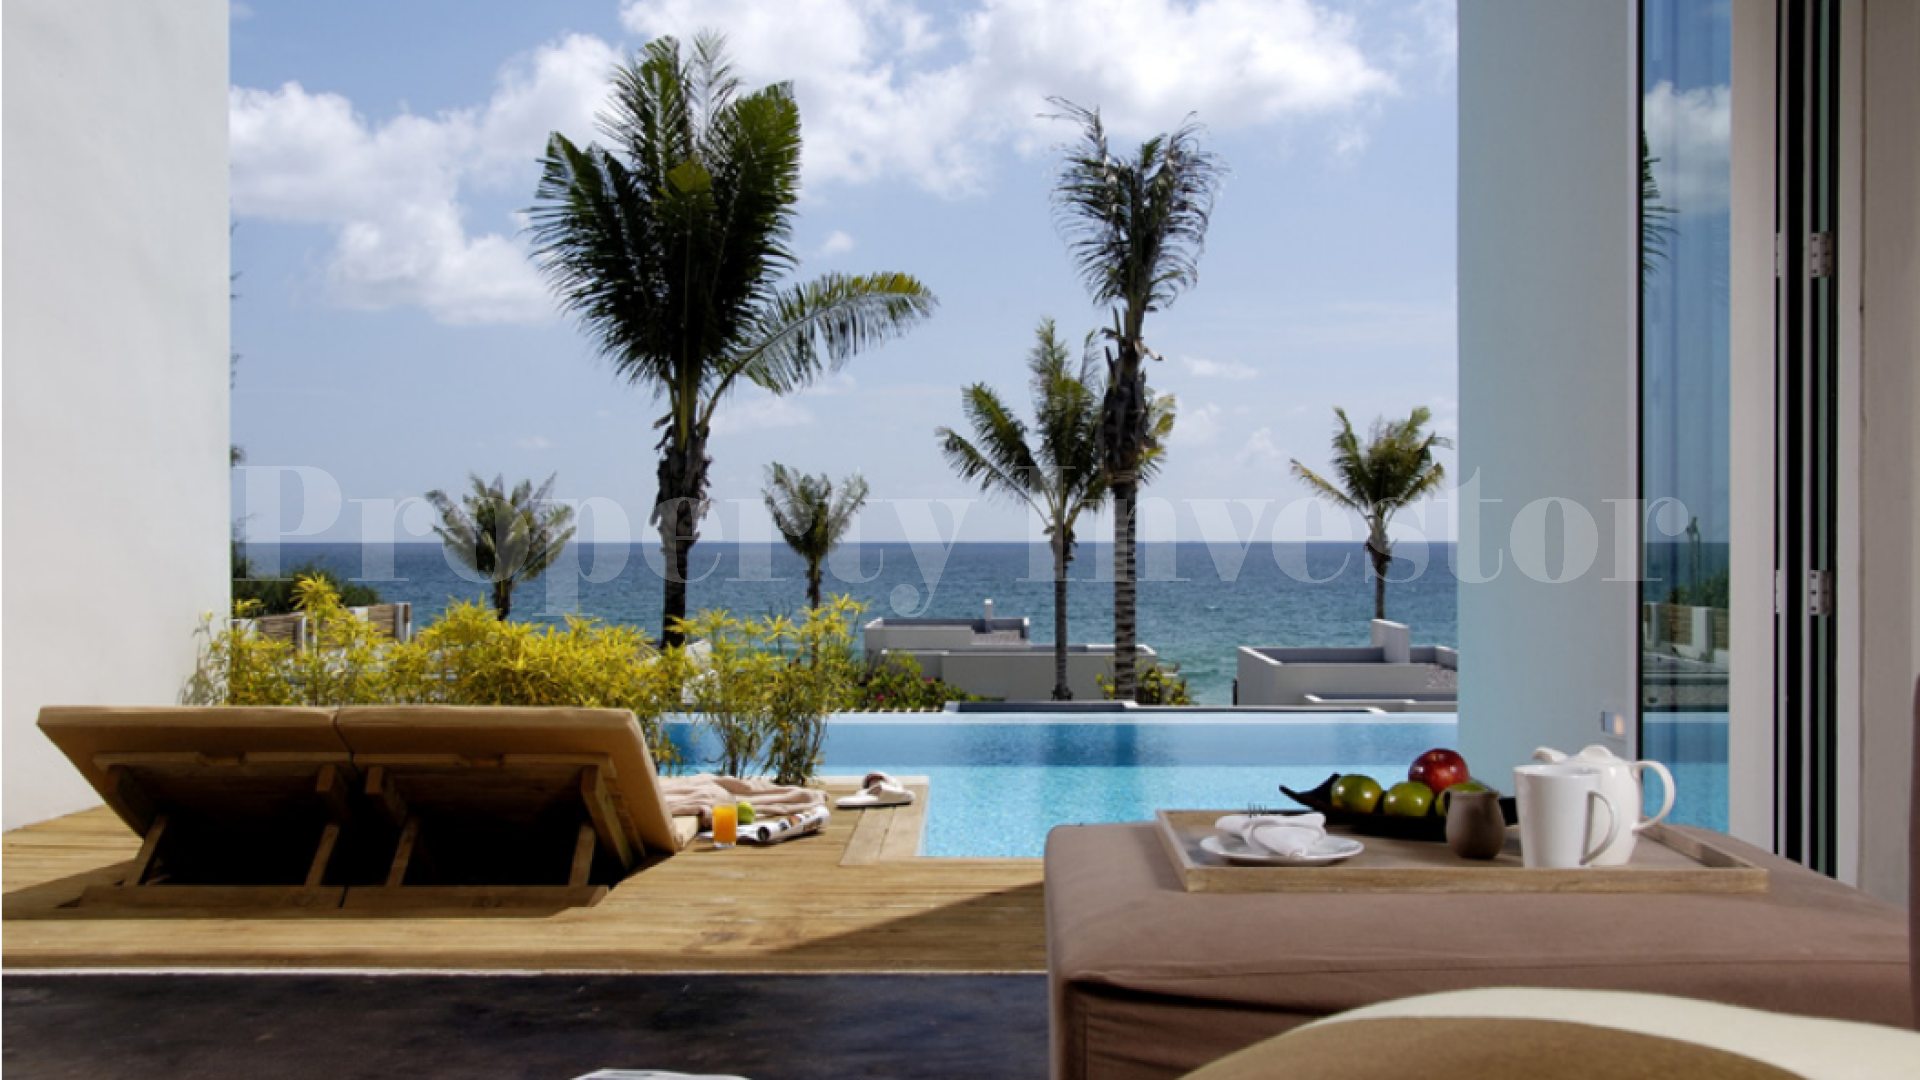 Продаются резиденции с 3 спальнями в апарт-отеле на Багамах (Residence 606)